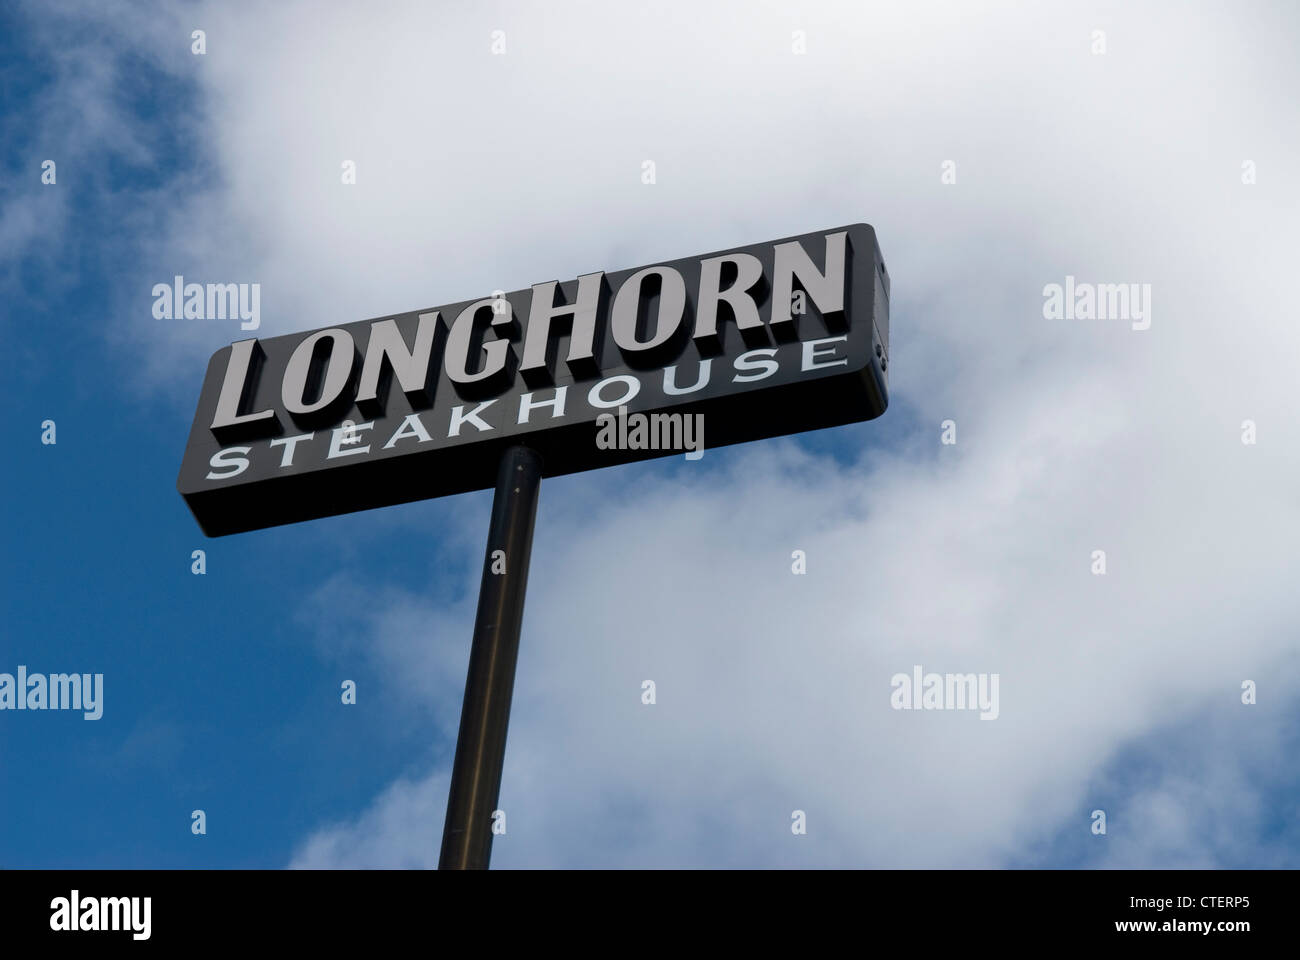 Longhorn Steakhouse Restaurant Sign USA Stock Photo